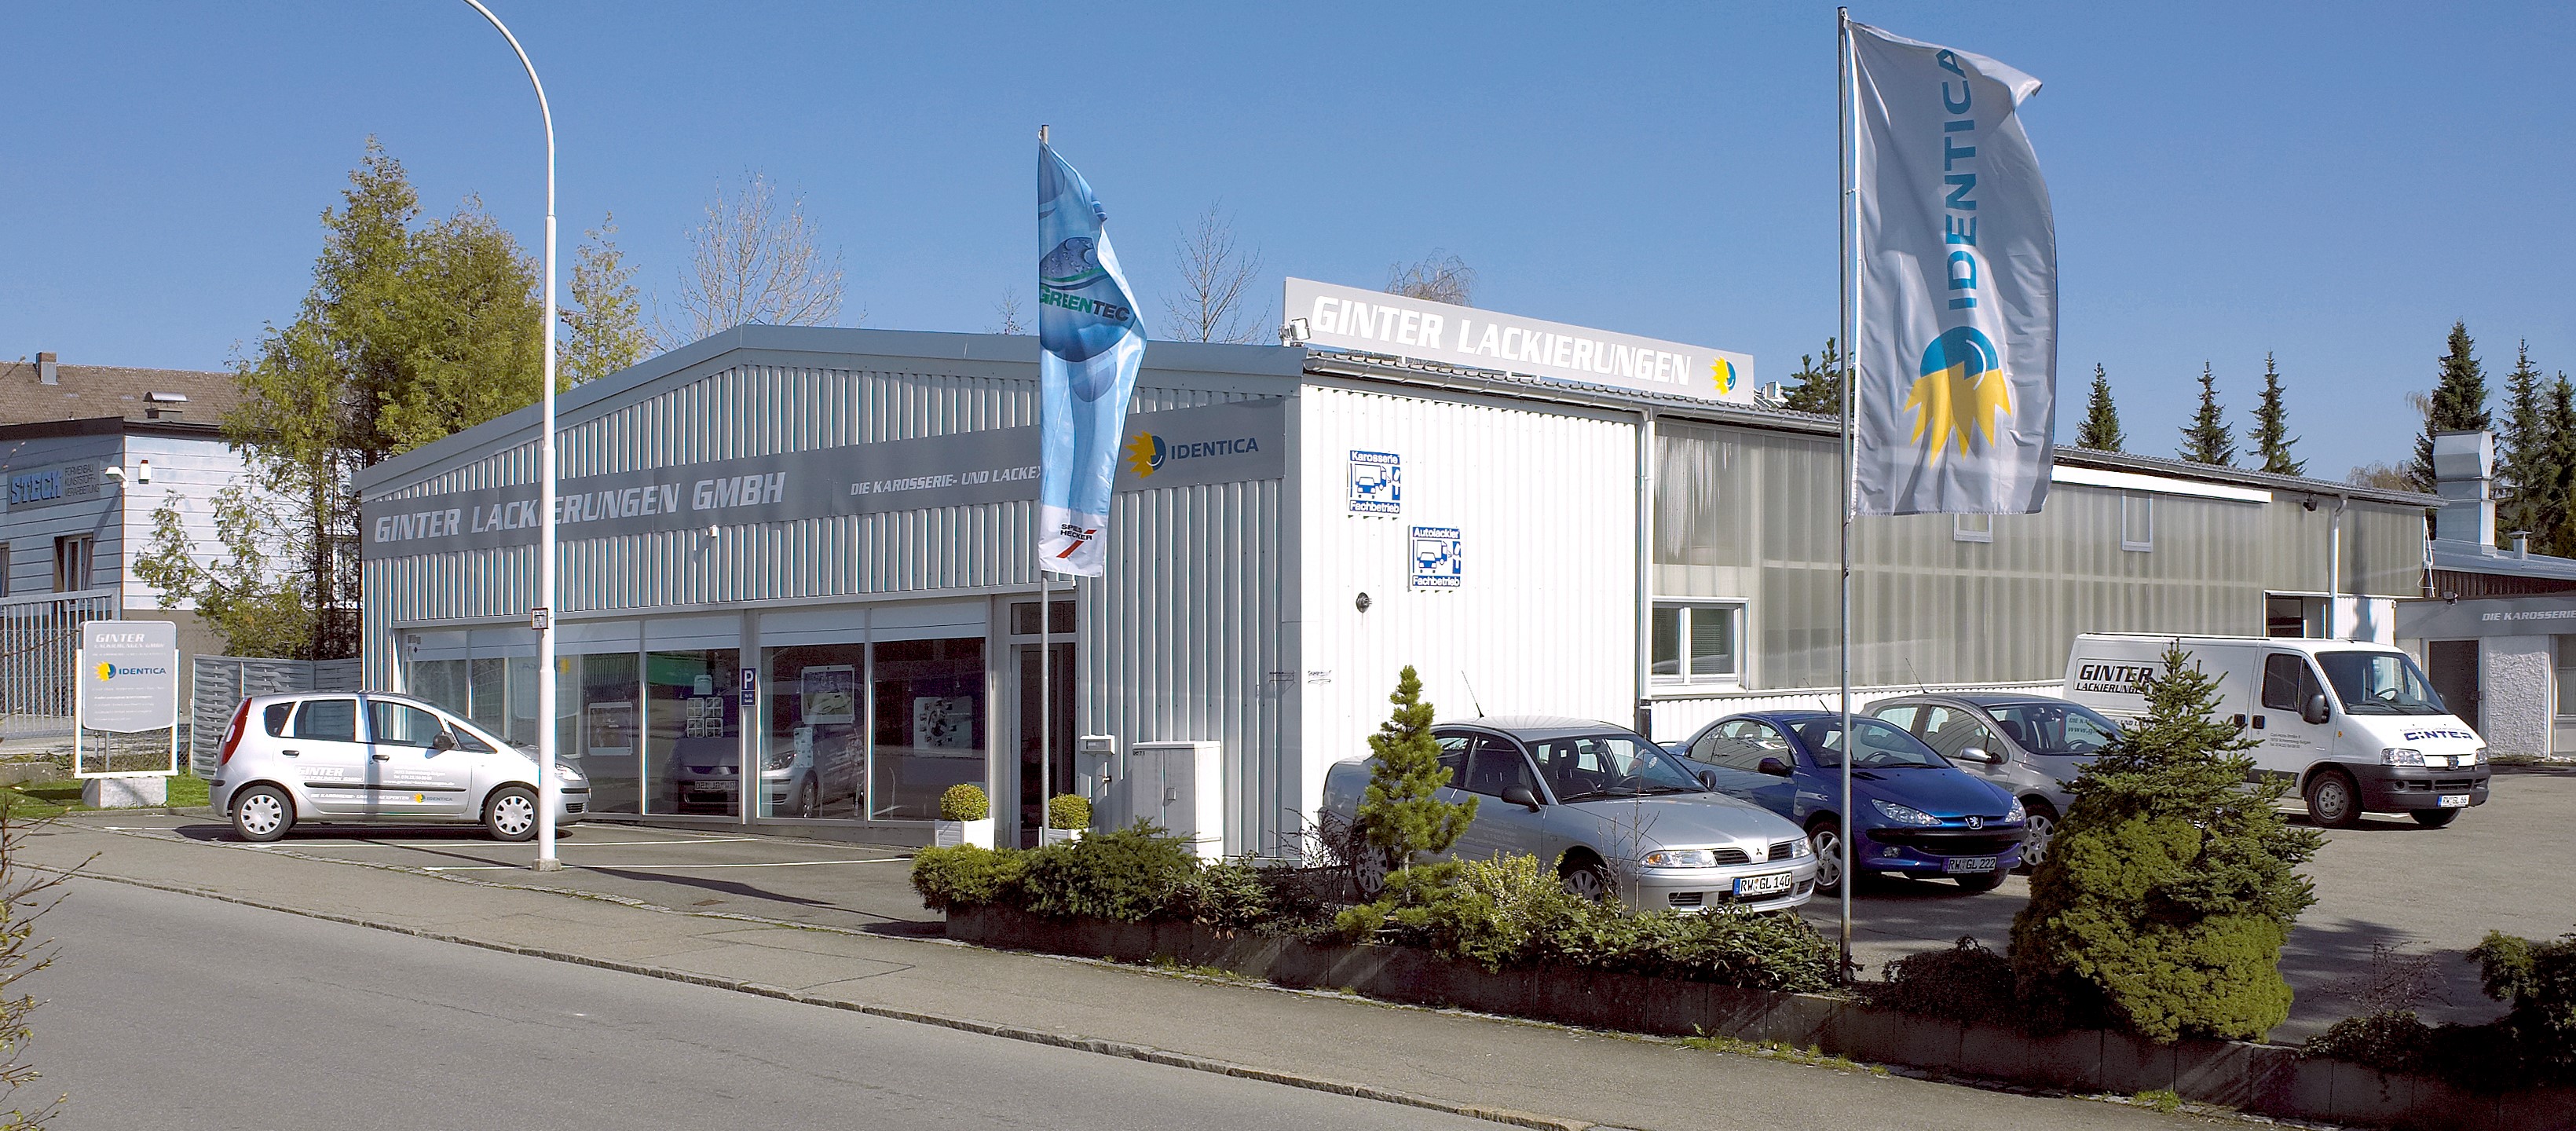 Kundenbild groß 1 Ginter Lackierungen GmbH (Identica)